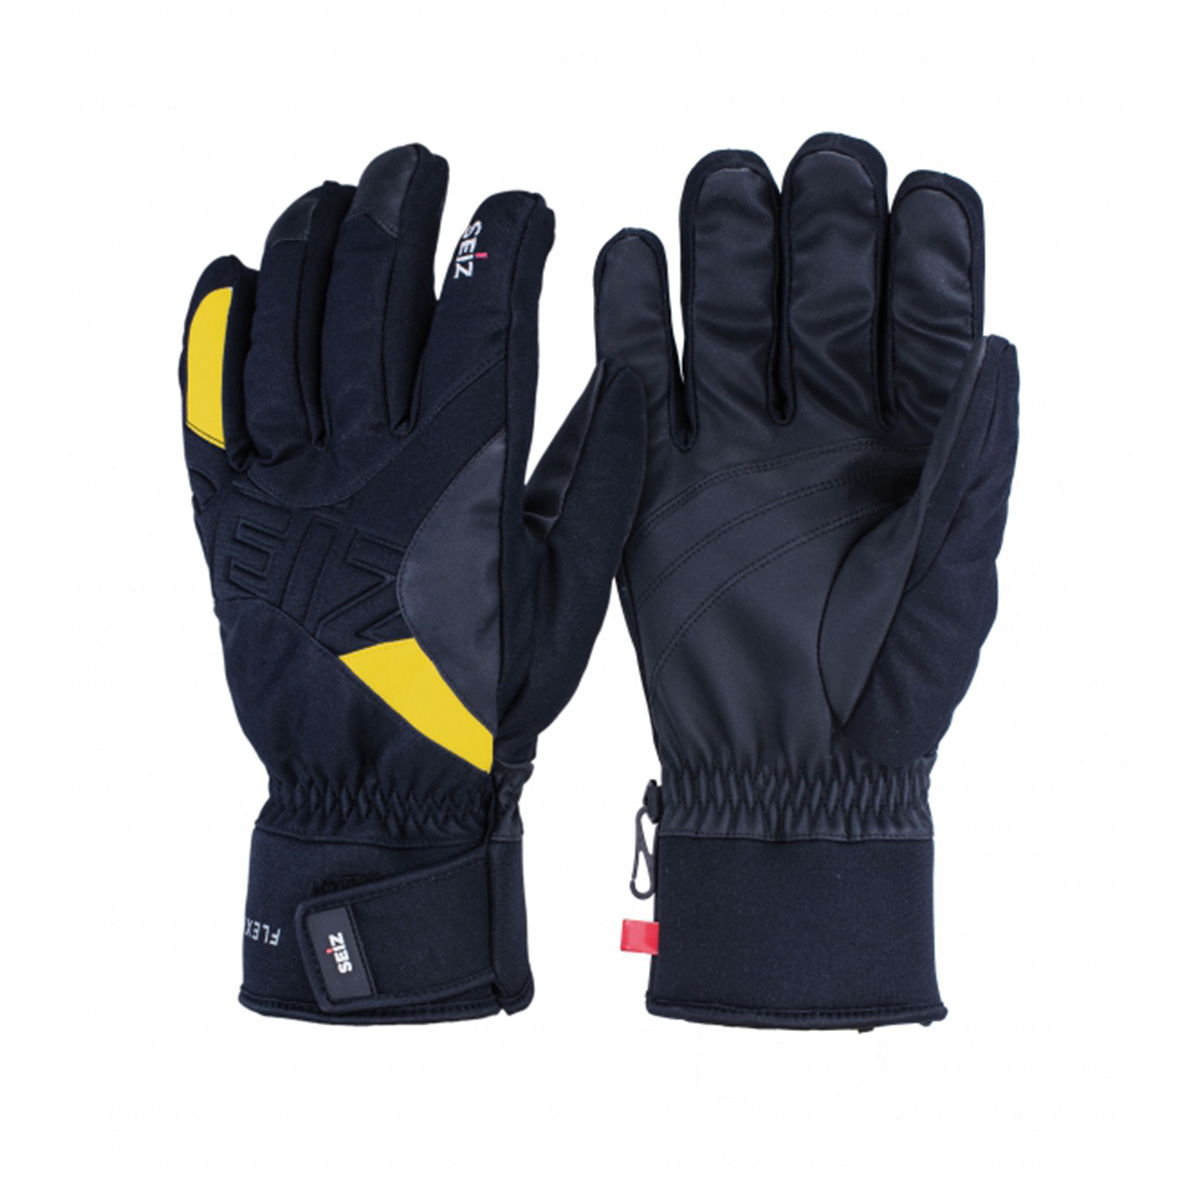 Seiz Handschuhe FLEXIBLE Winter Schnee Unisex WGL00010 01 schwarz gelb von Seiz